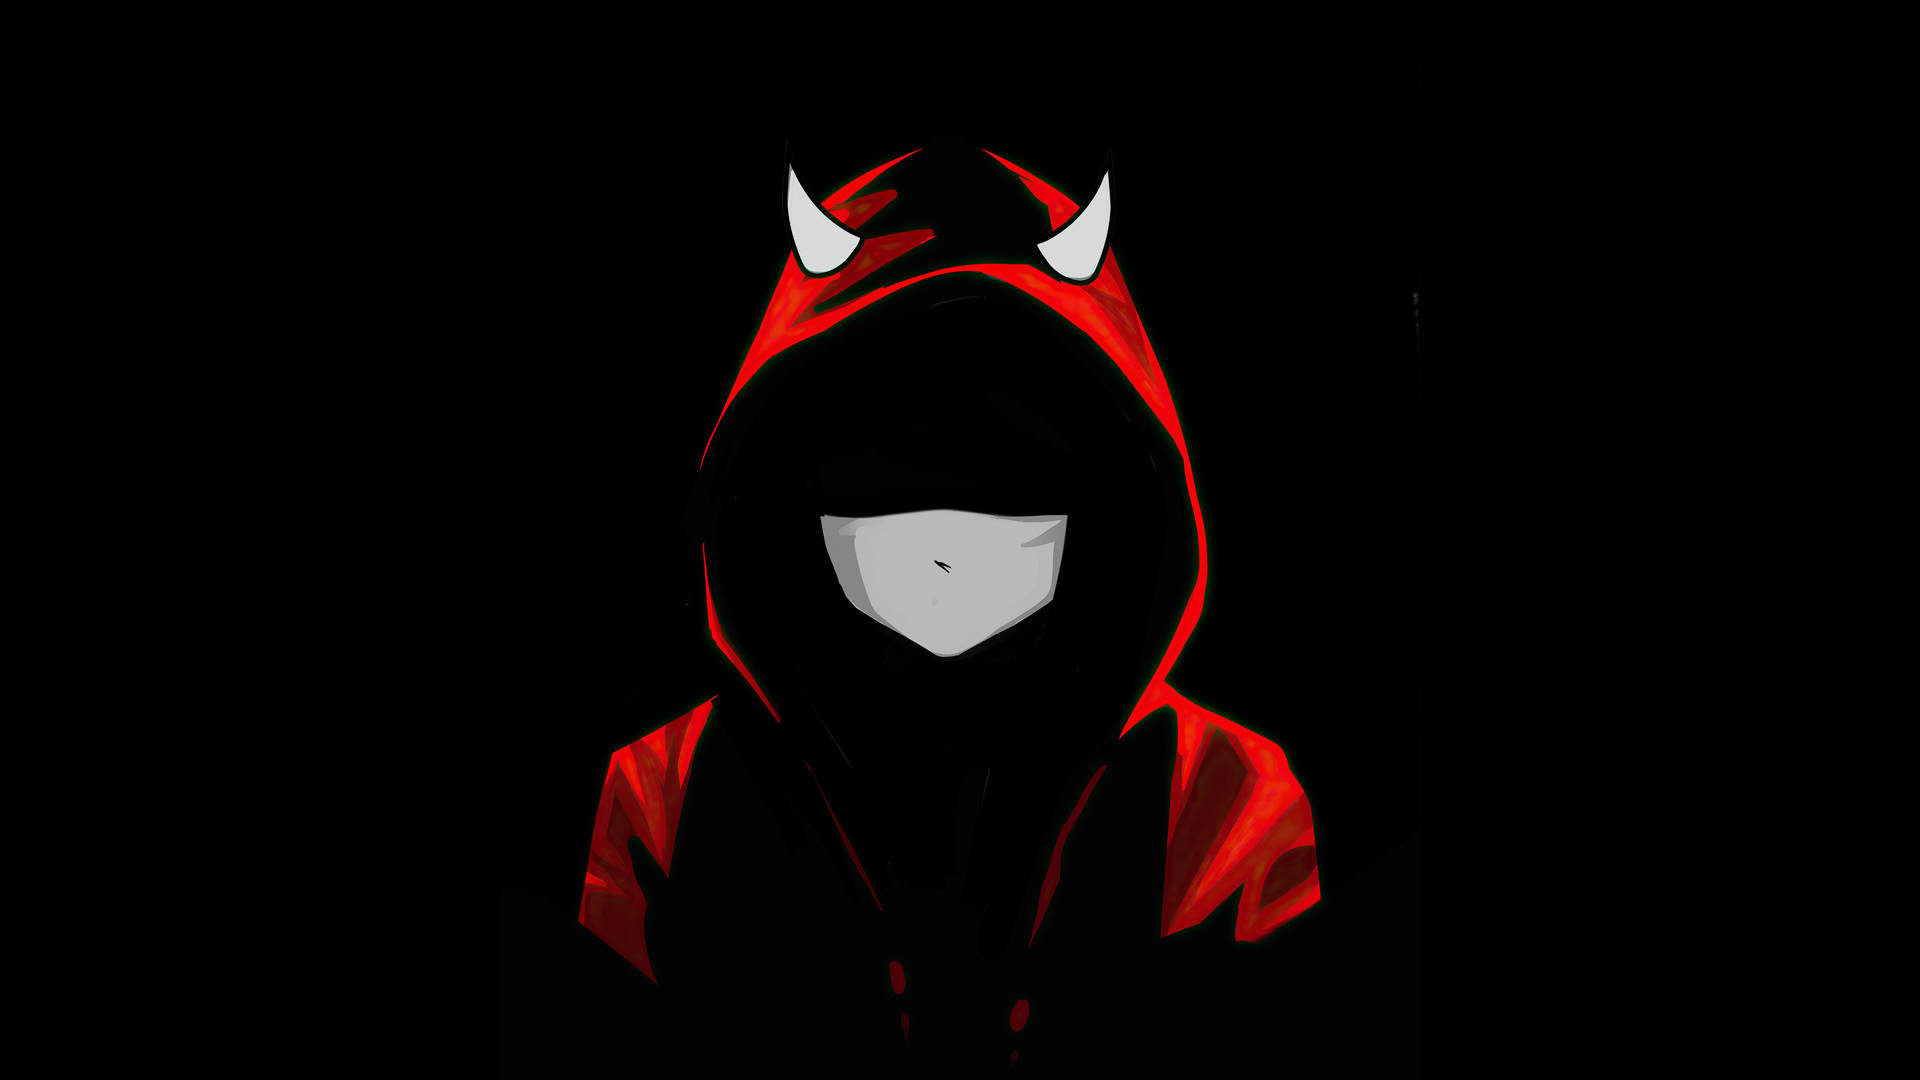 4k Devil In A Red Hoodie Wallpaper